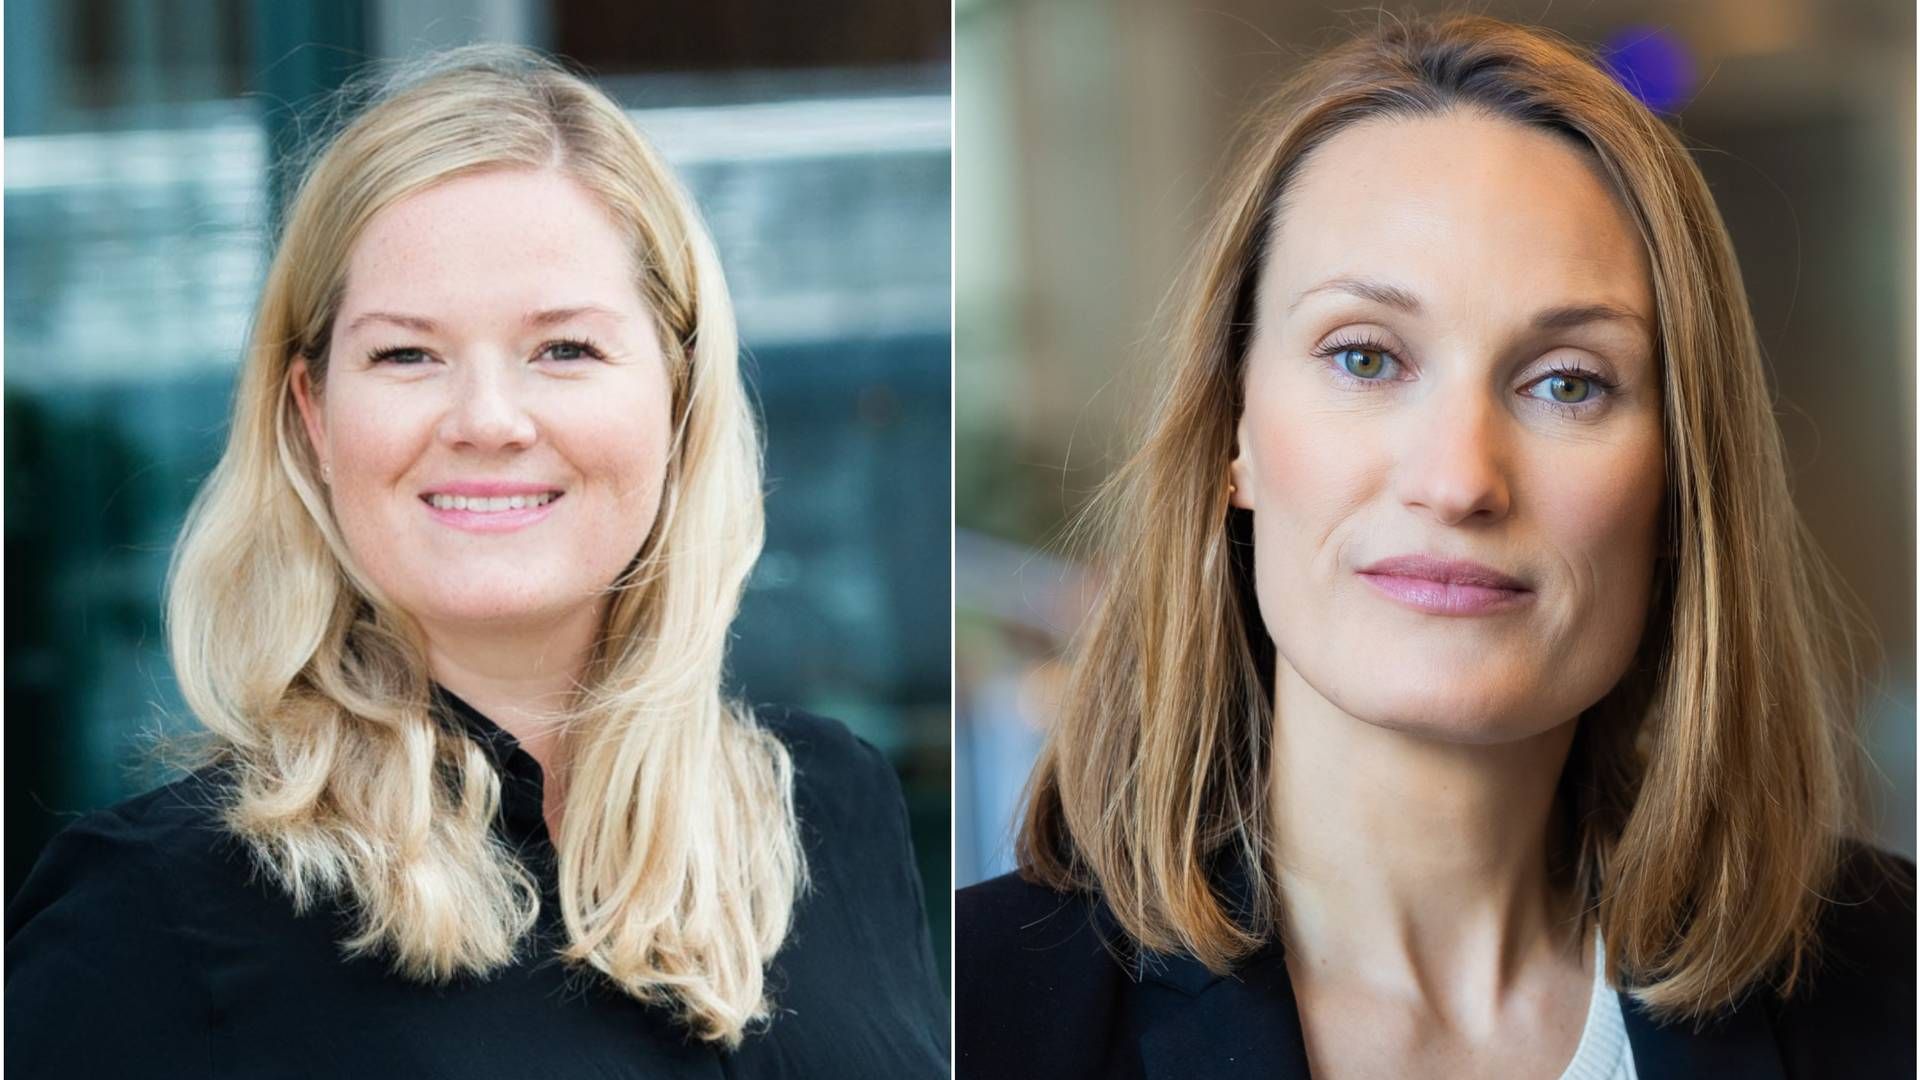 NY KOMMUNIKASJONSTOPP: Silje Linnerud Næss og Anna-Lena Nordling er den nye kommunikasjonstoppen i Danske Bank | Foto: Danske Bank